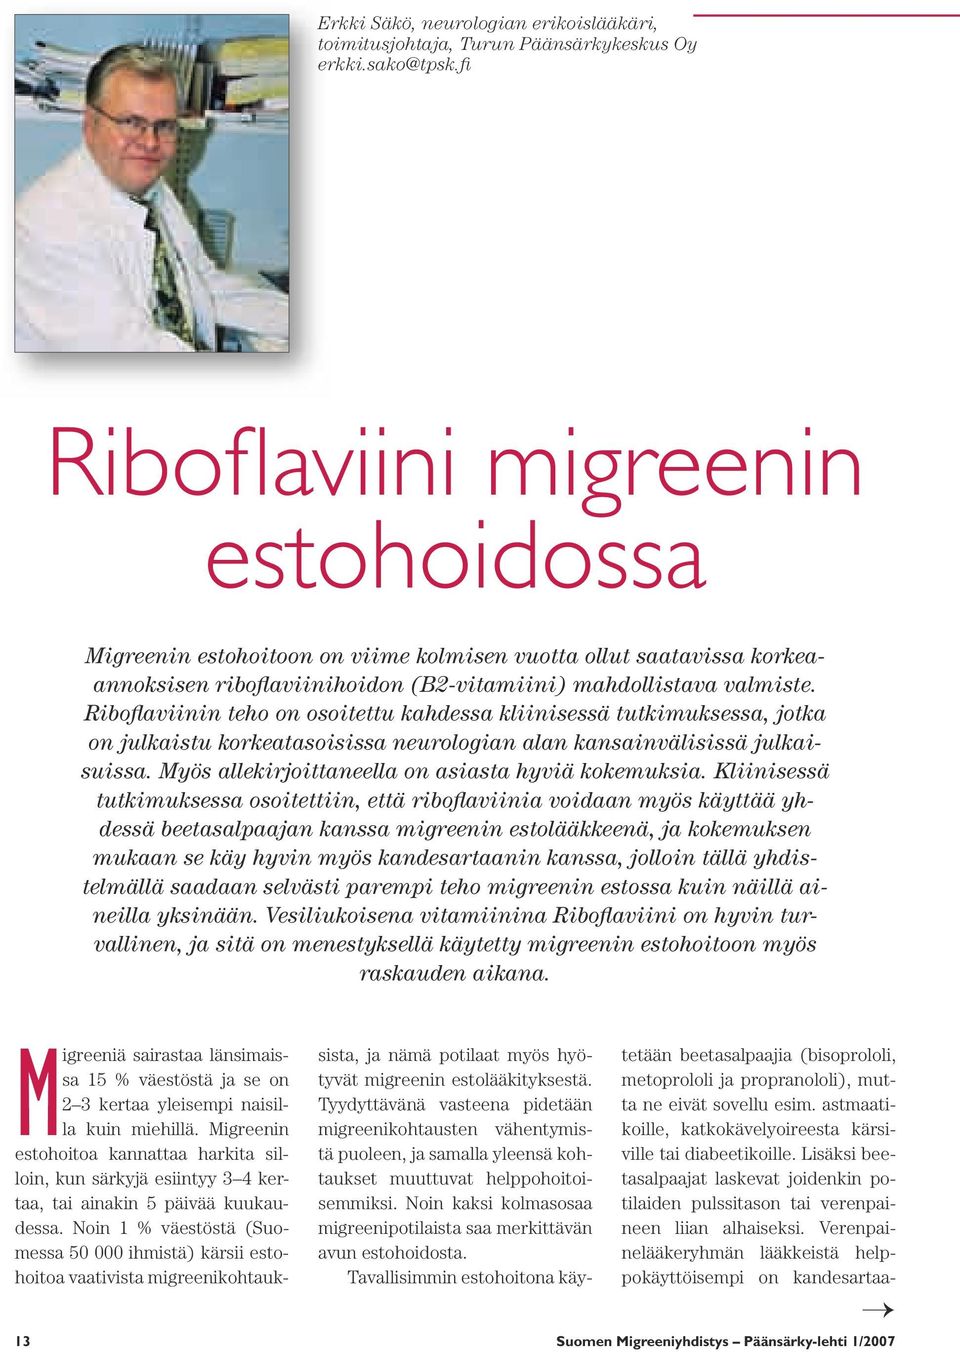 Riboflaviinin teho on osoitettu kahdessa kliinisessä tutkimuksessa, jotka on julkaistu korkeatasoisissa neurologian alan kansainvälisissä julkaisuissa.